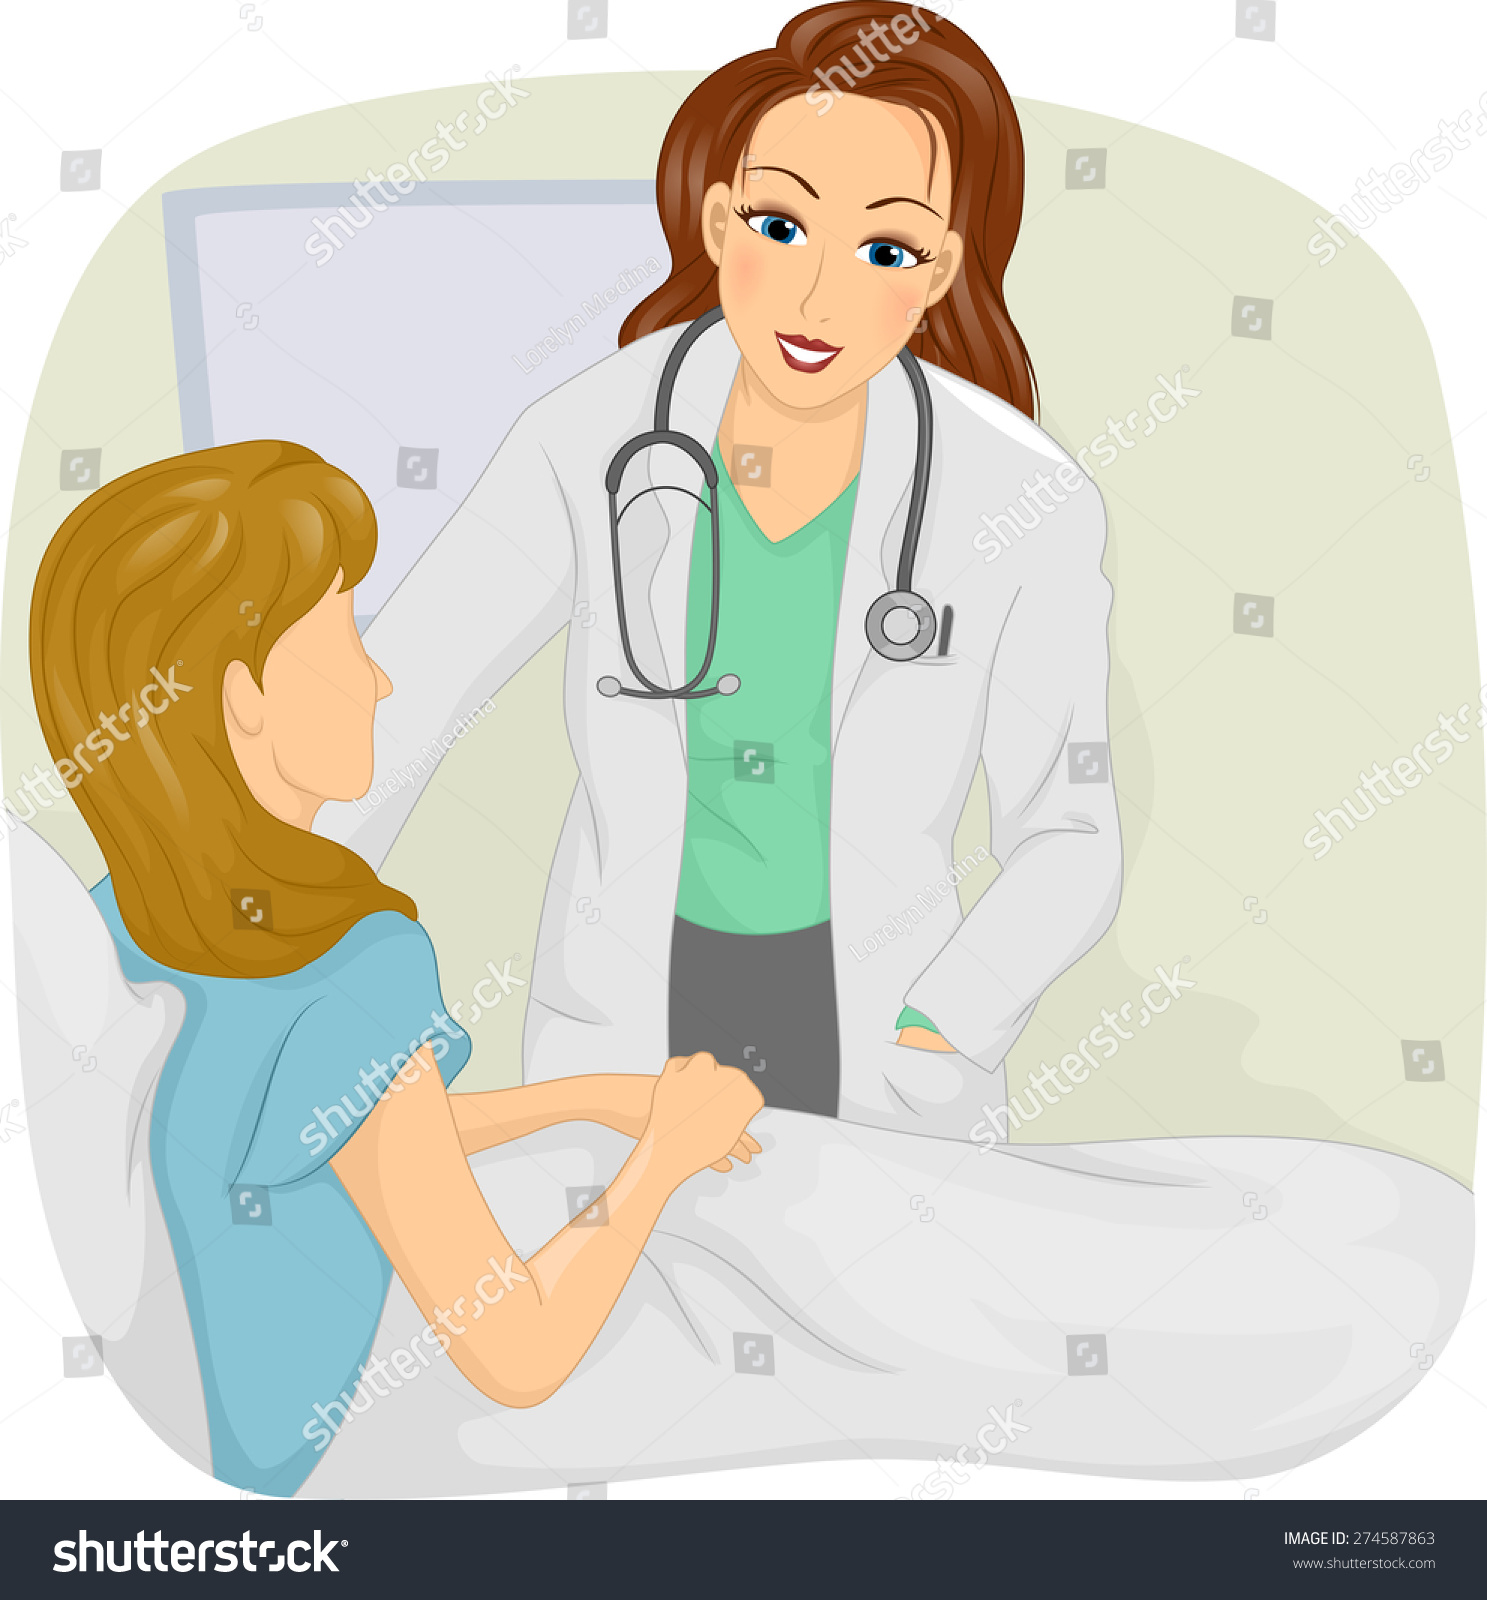 Медсестра и пациент иллюстрации